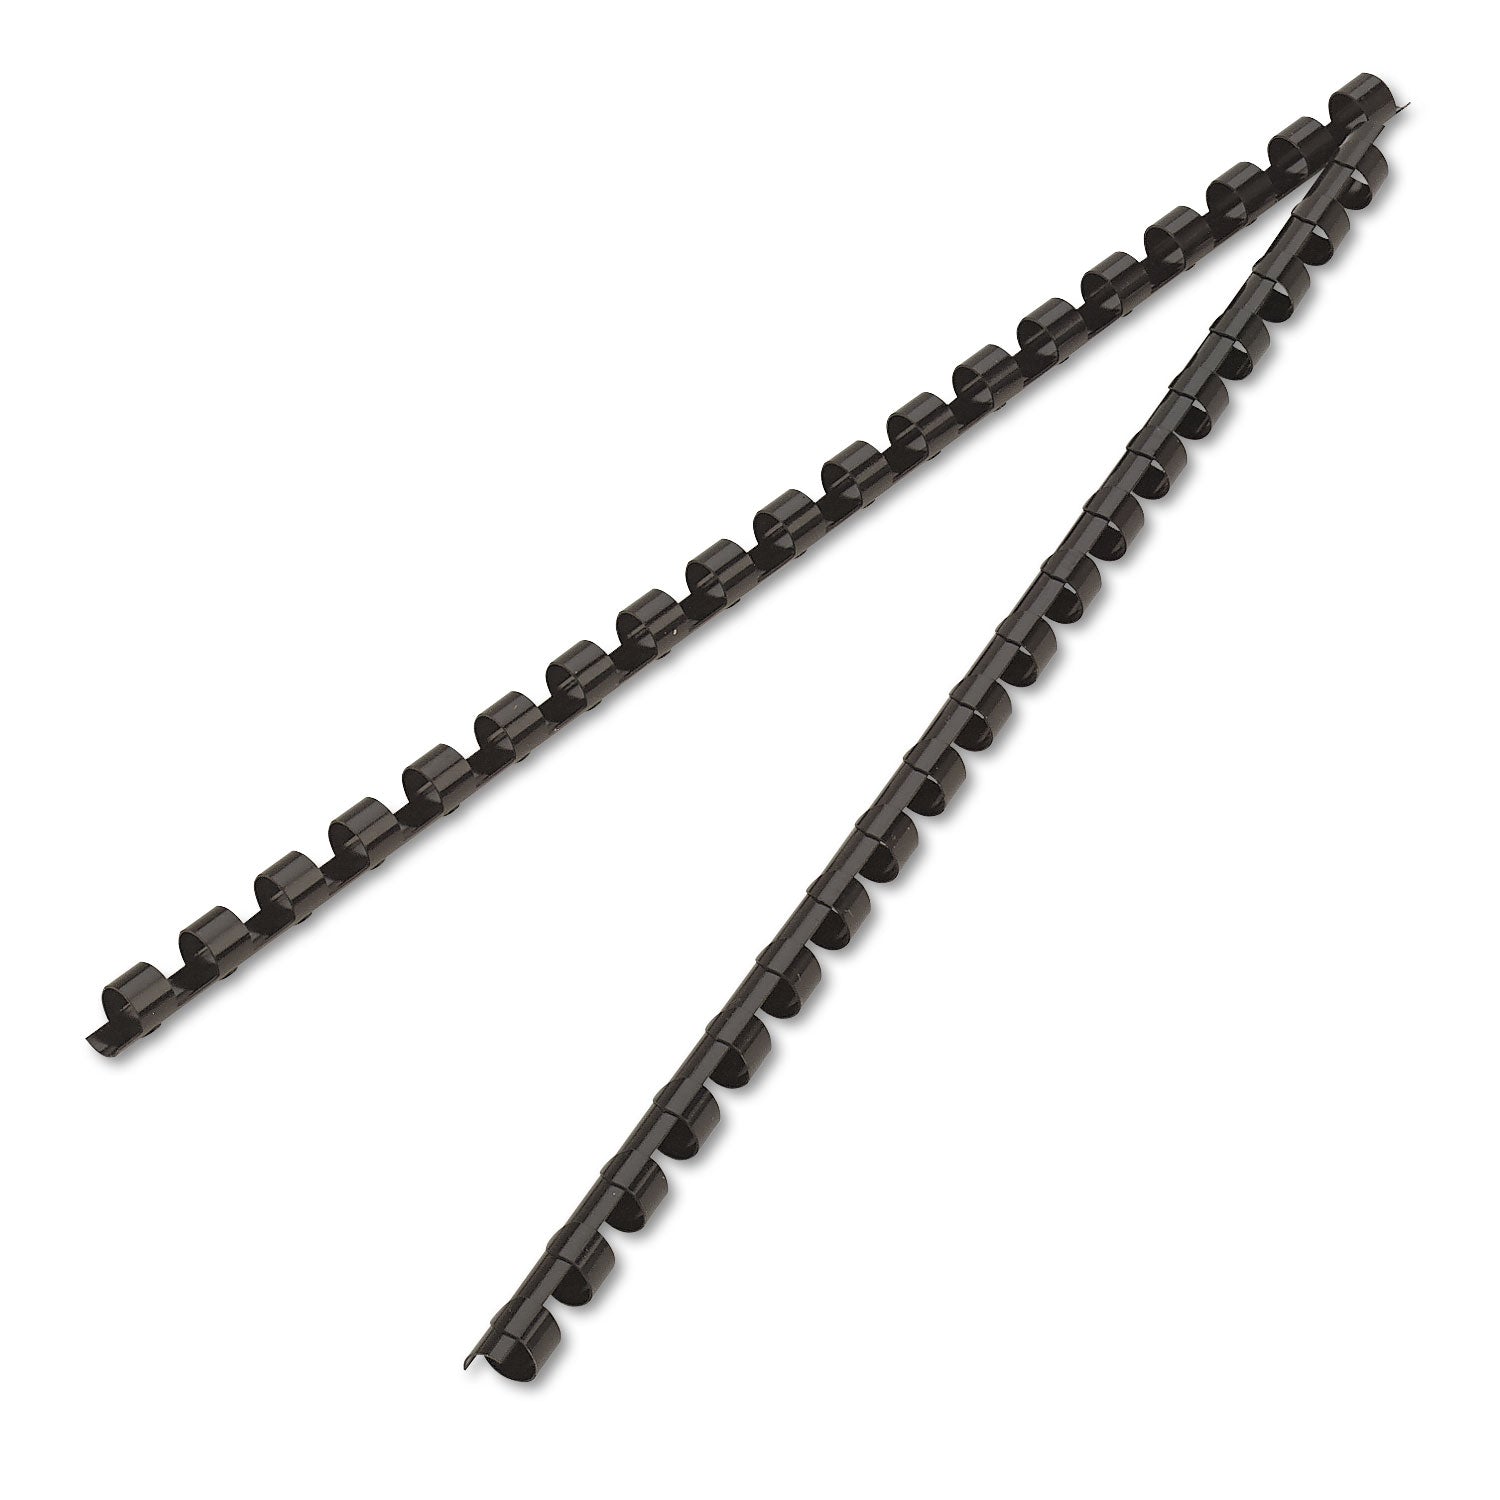 Plastic Comb Bindings, 5/16" Diameter, 40 Sheet Capacity, Black, 25/Pack - 